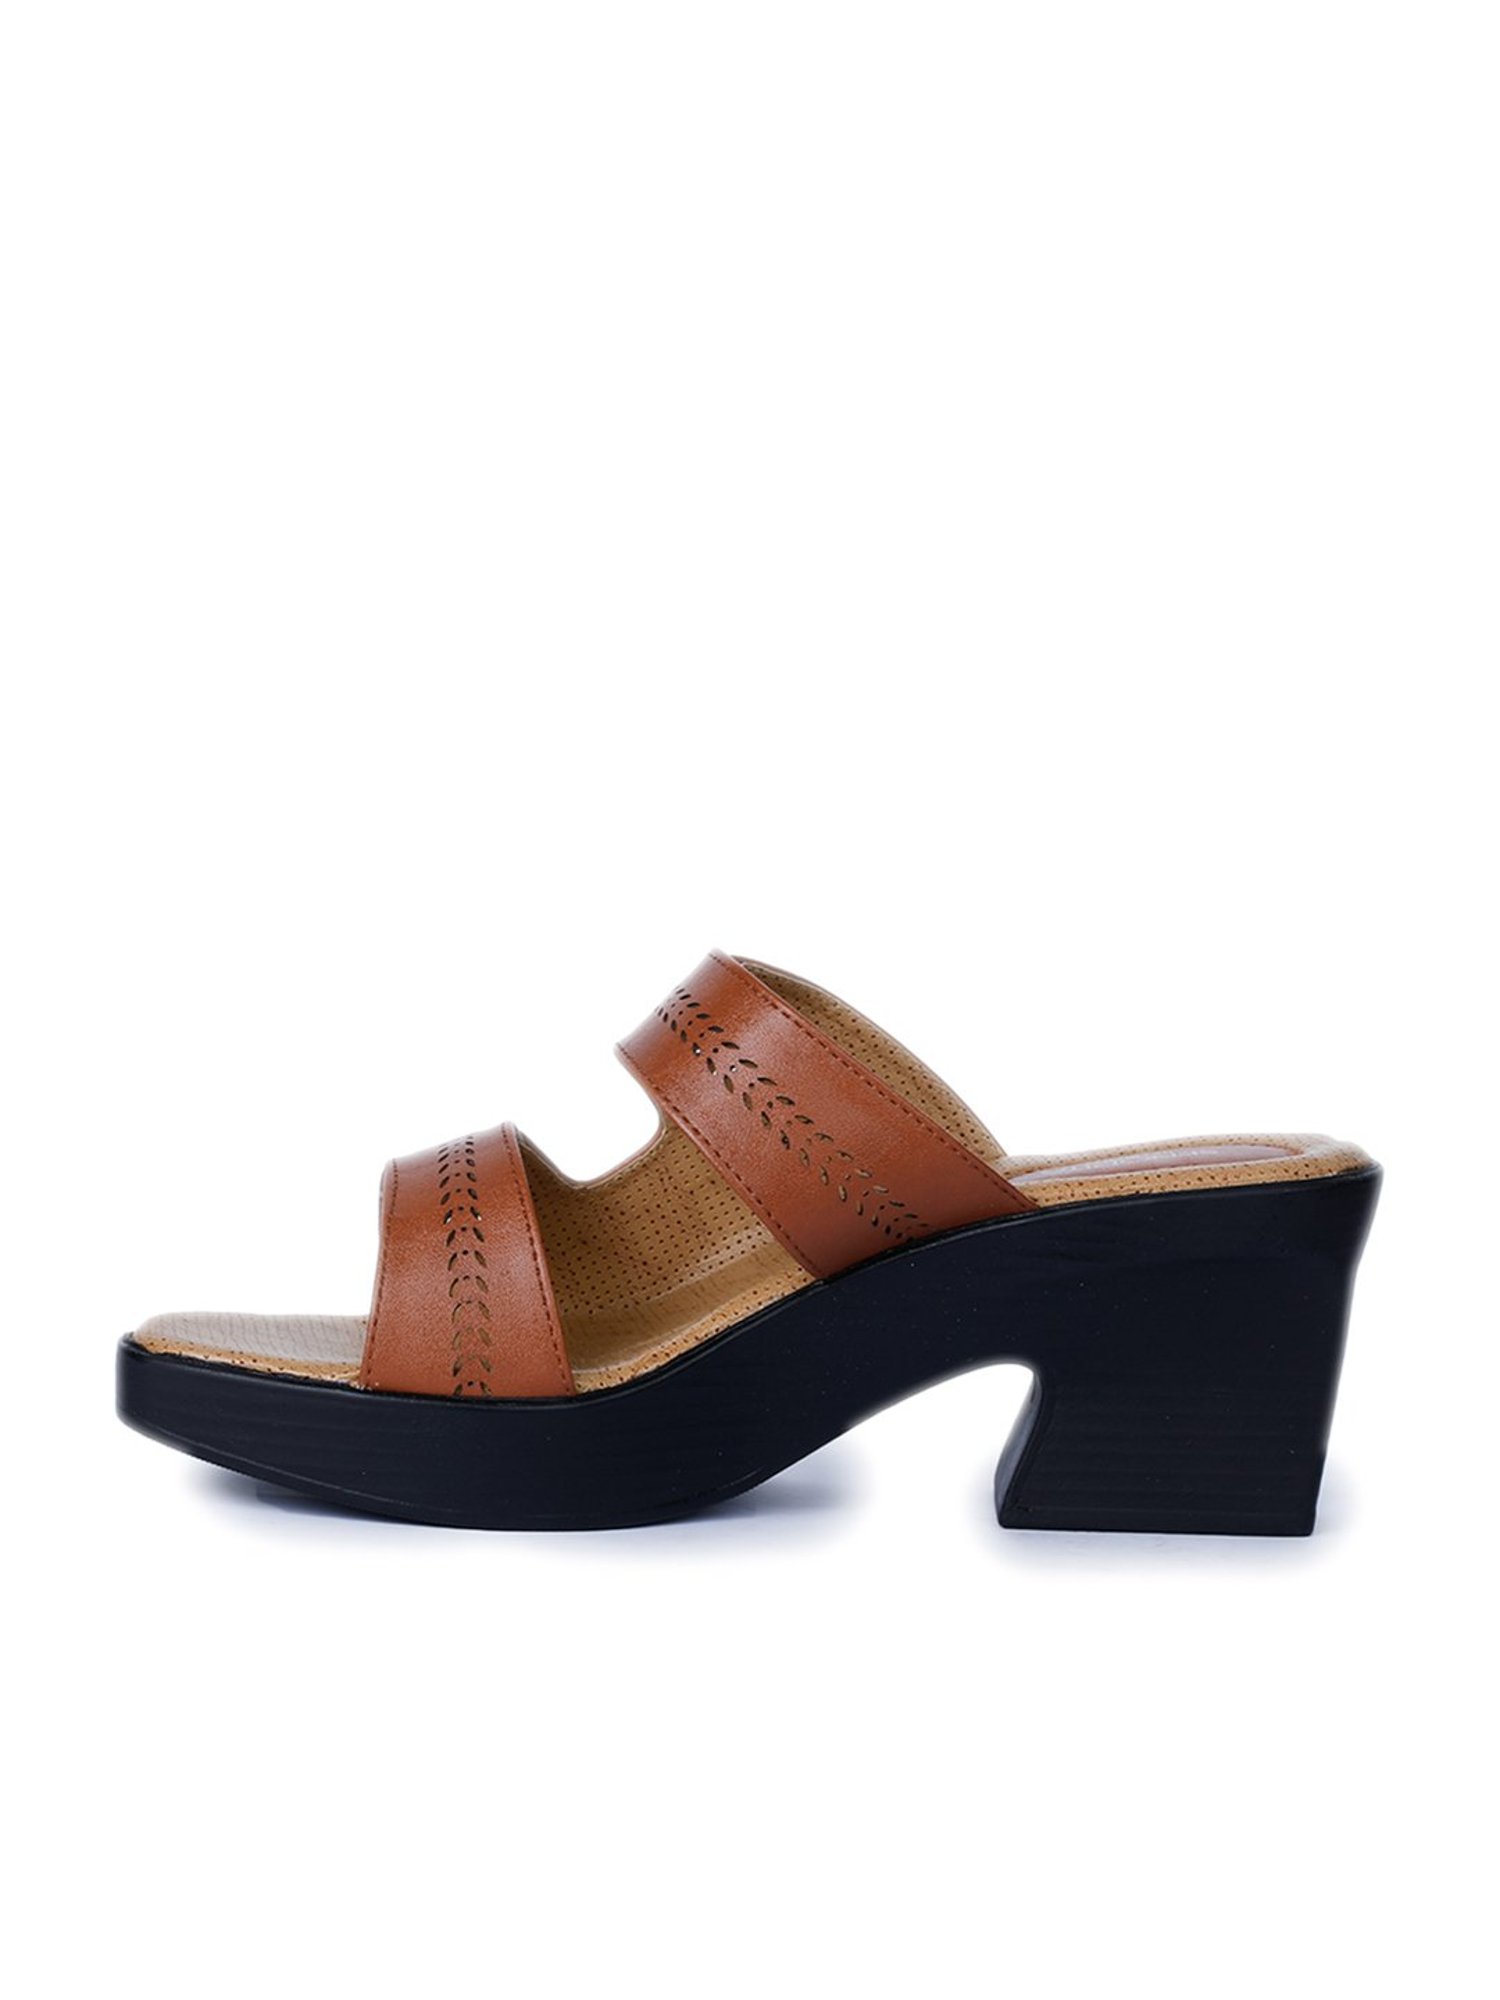 Buy Healers Comfort (Tan) Platform Thongs Sandals For Womens JL-76